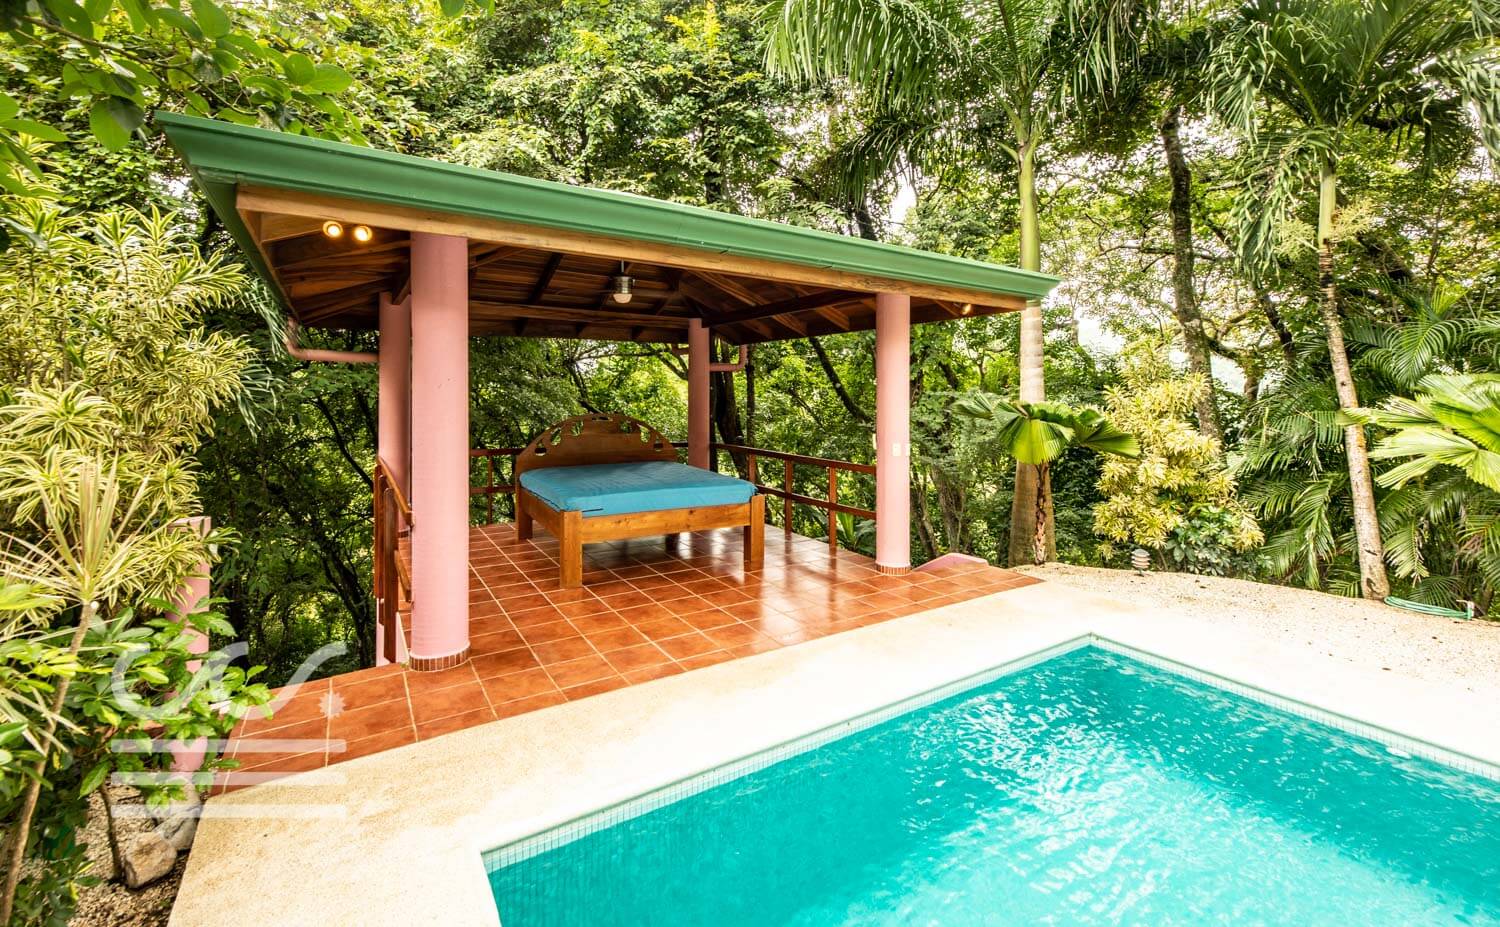 Casa-Nadine-Wanderlust-Realty-Real-Estate-Retals-Nosara-Costa-Rica-5.jpg